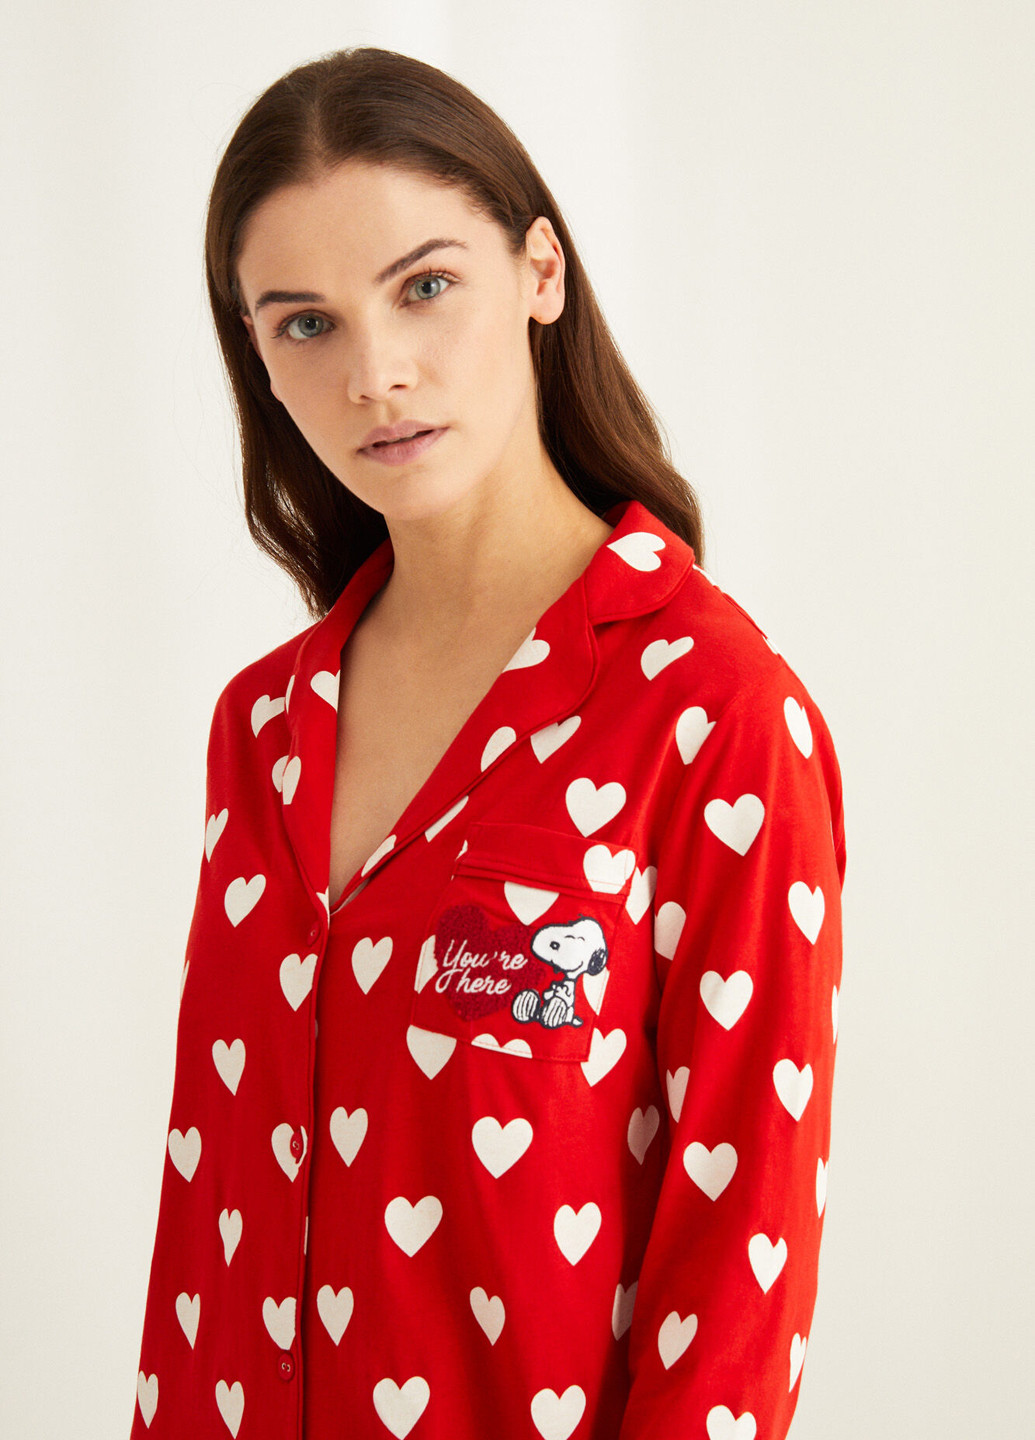 Ночная рубашка Women'secret сердечки красная домашняя трикотаж, хлопок